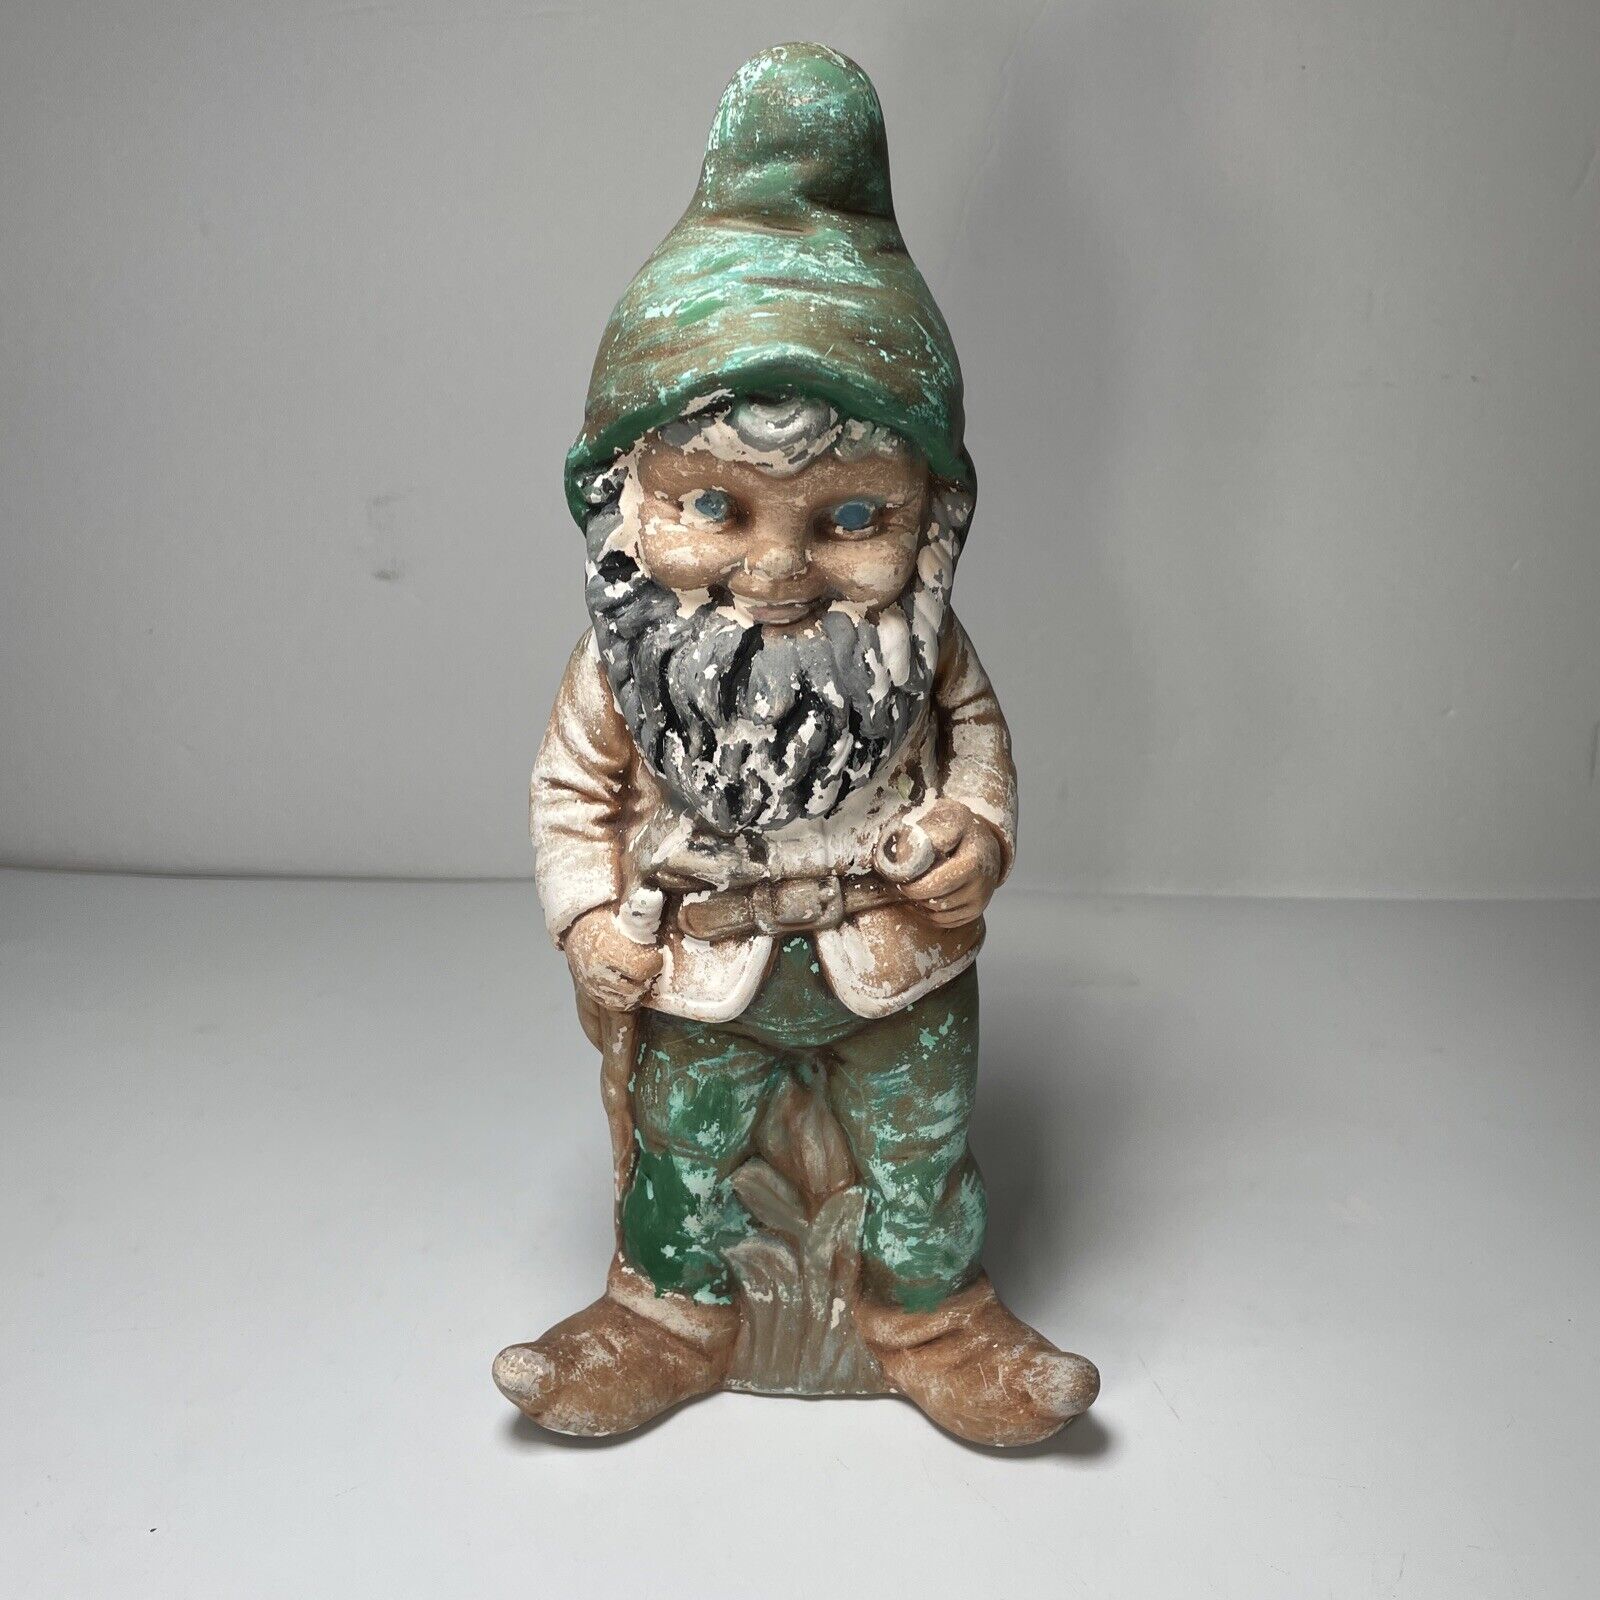 Knome Gnome Vintage 1960’s Rare German Made Ceramic Gnome Garden Figure Elf